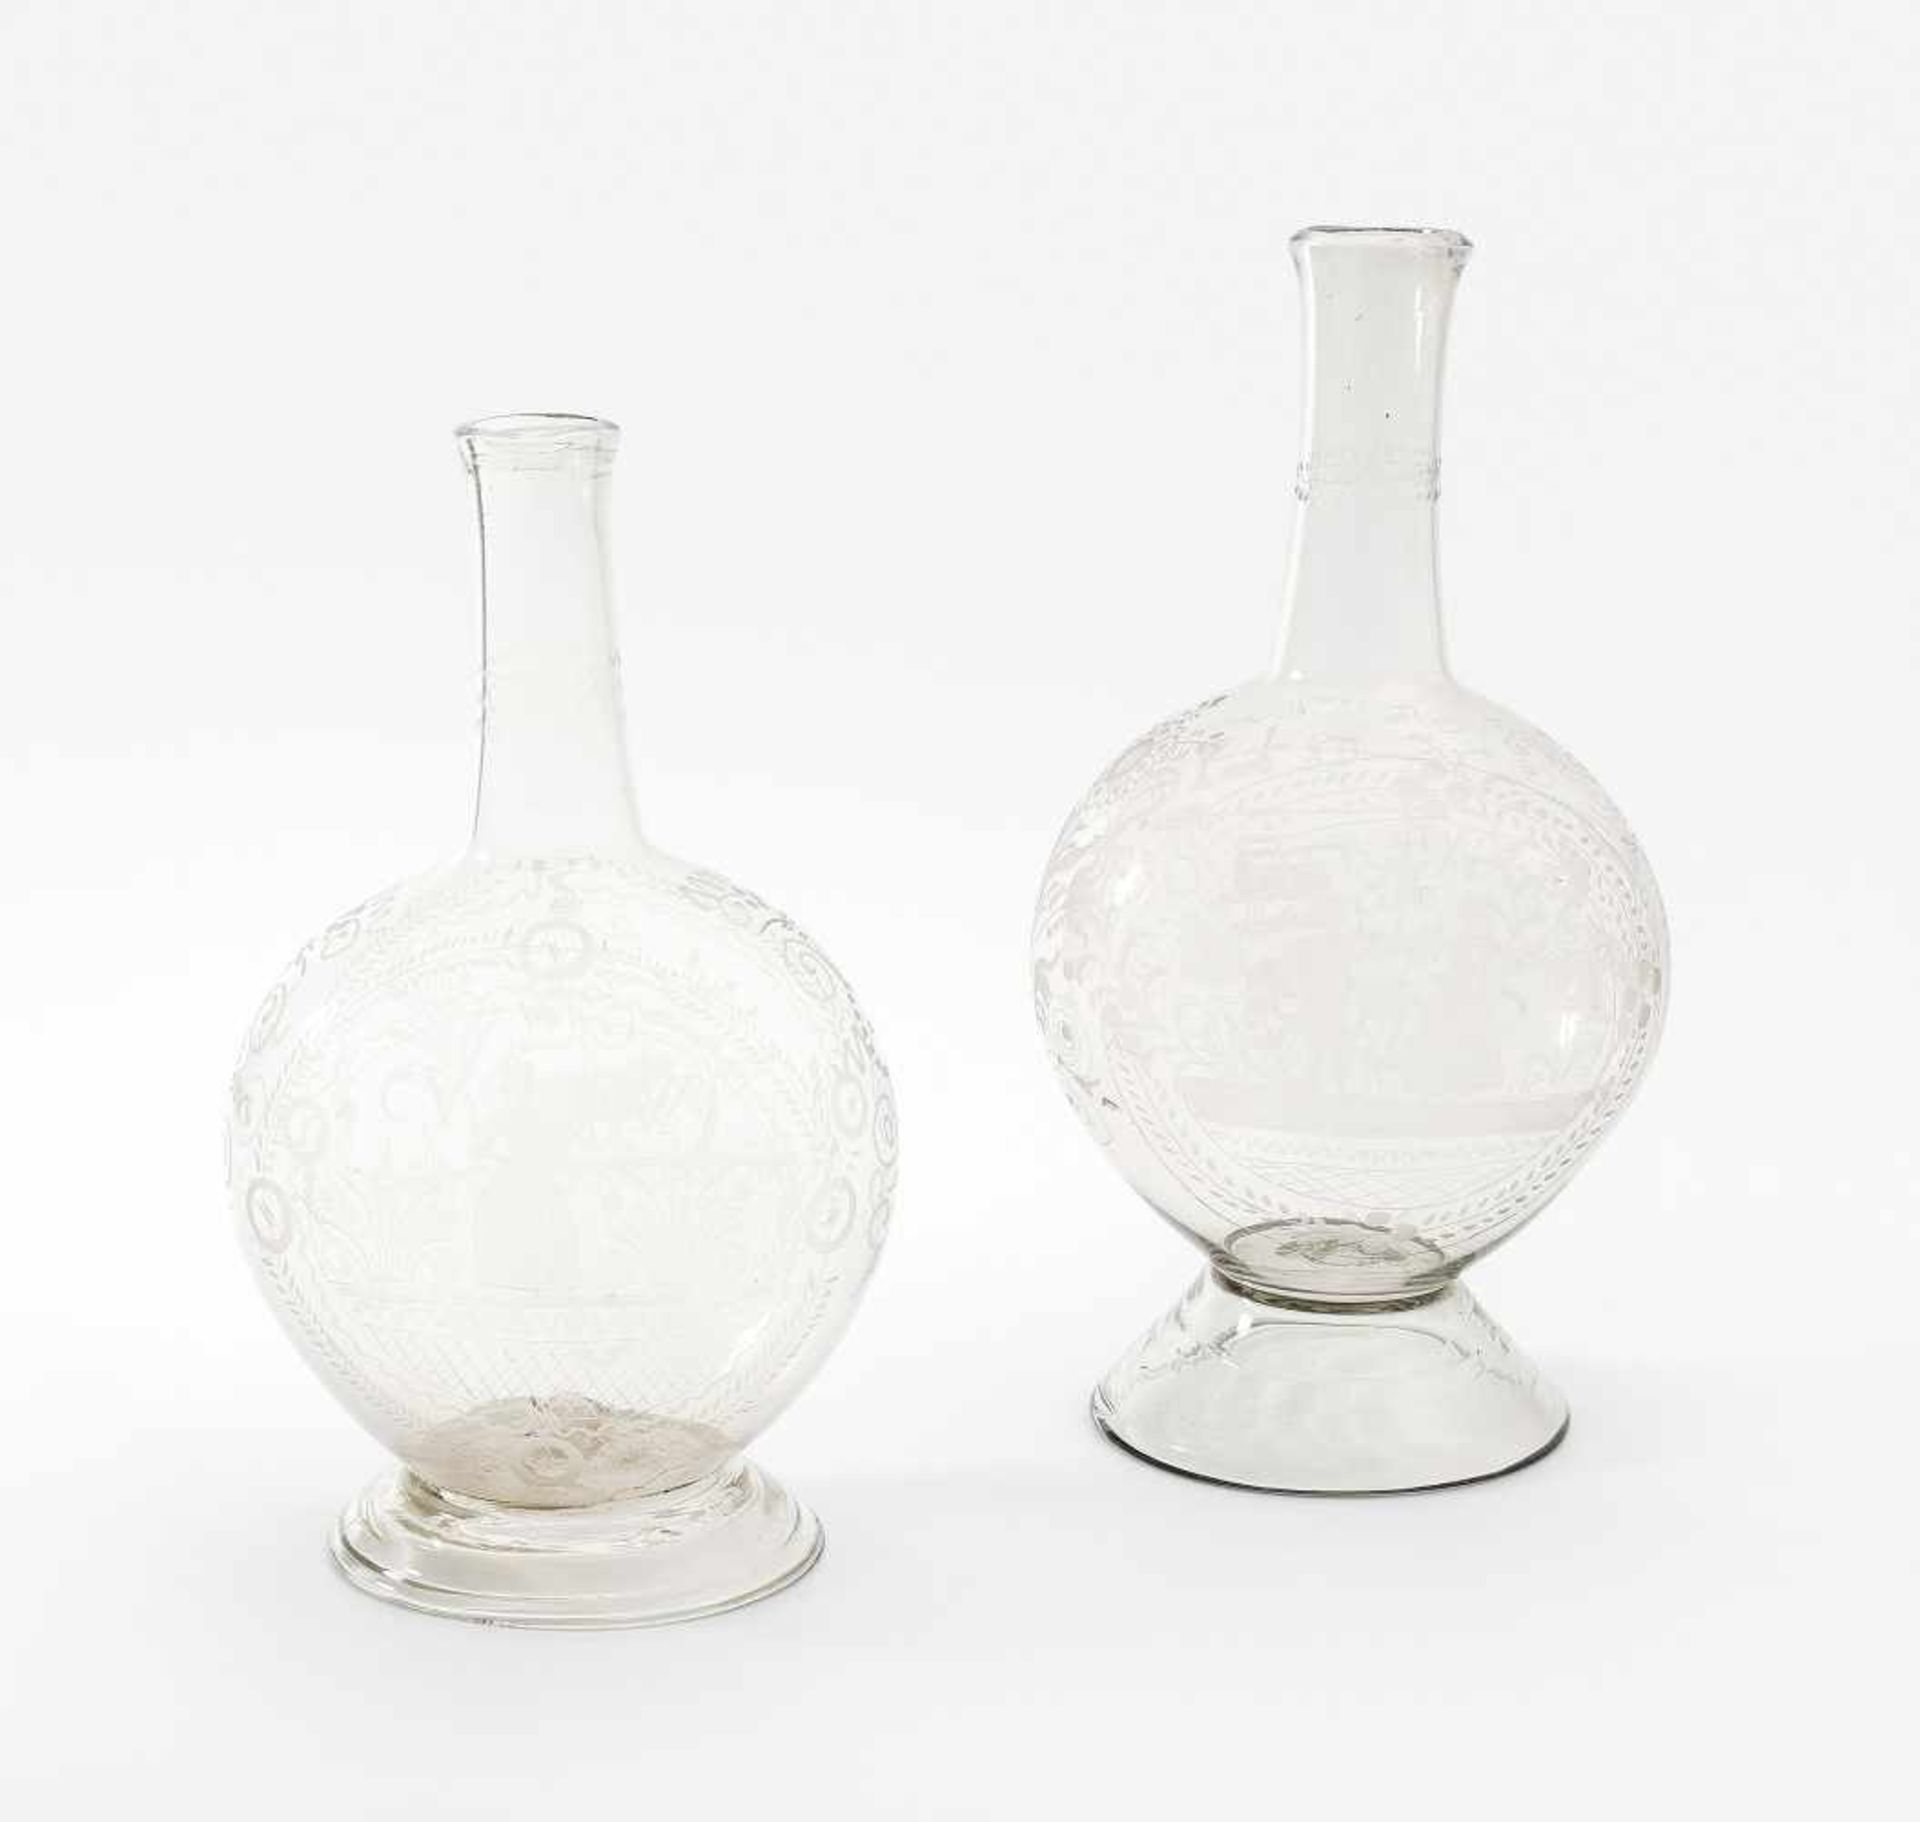 Alpenländisch2 Kugelflaschen. Um 1800. Flühli. Farbloses Glas, gerutschter Mattschnittdekor. Die